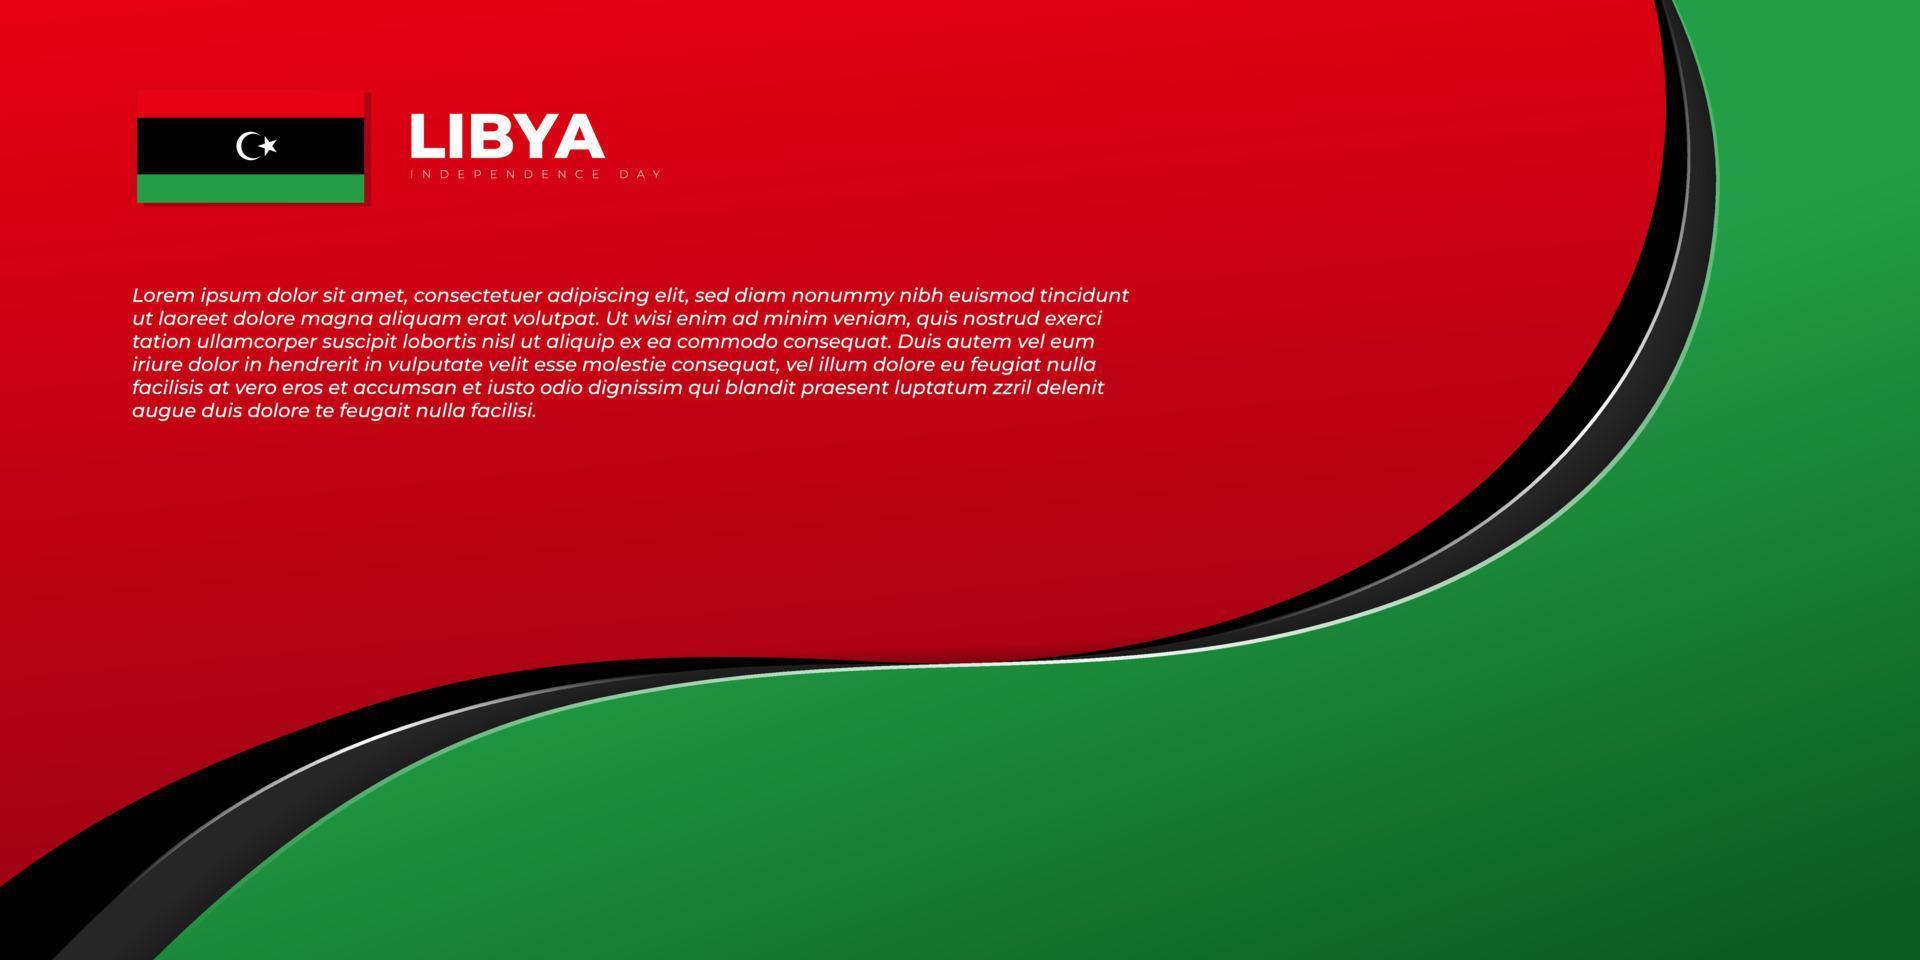 ligne noire ondulée sur fond rouge et vert. conception de modèle de fête de l'indépendance de la libye. vecteur